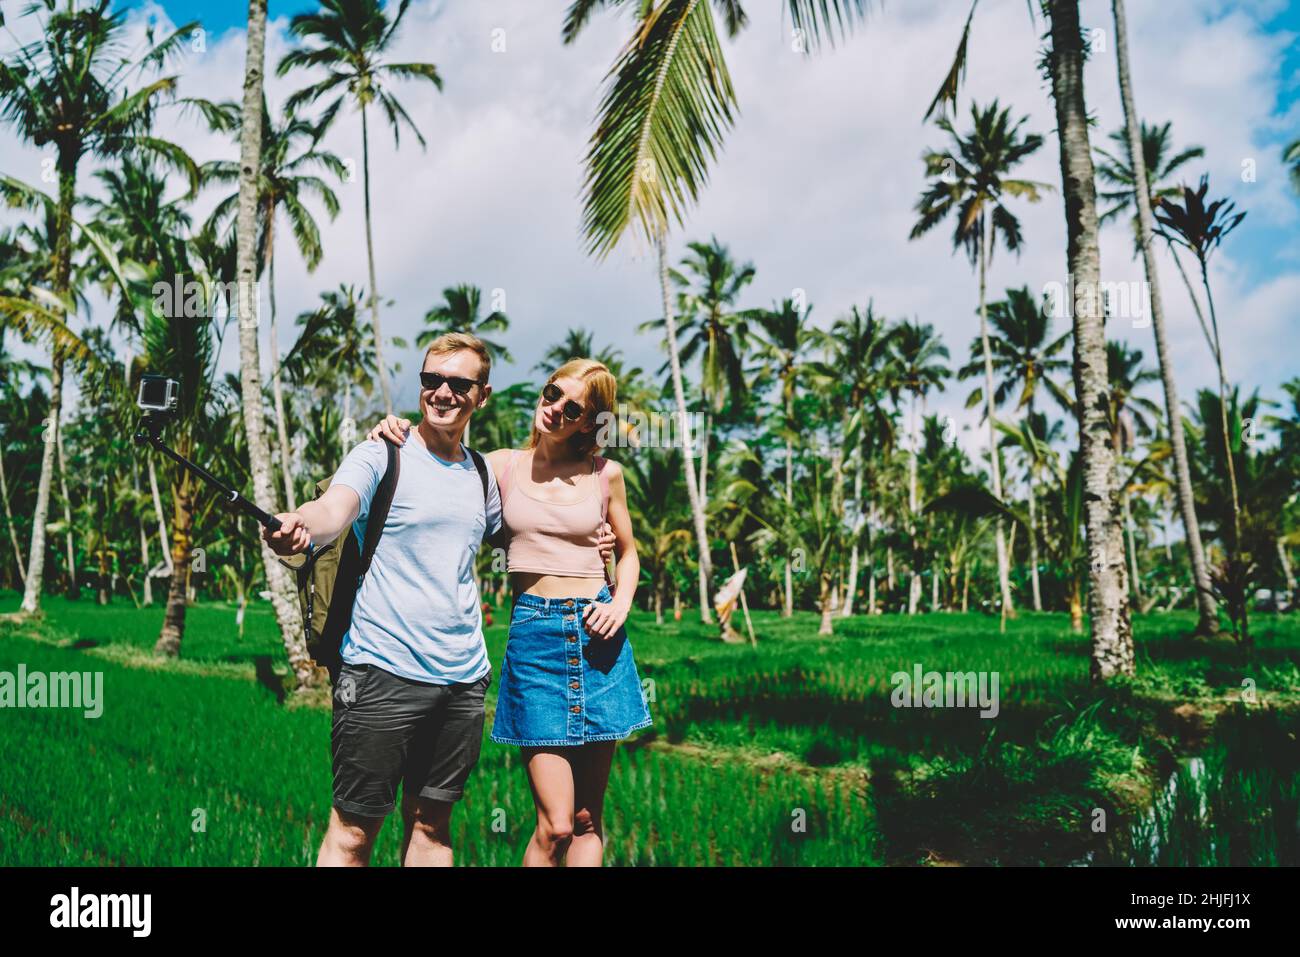 Coppia viaggiante con bastone selfie in campi tropicali Foto Stock